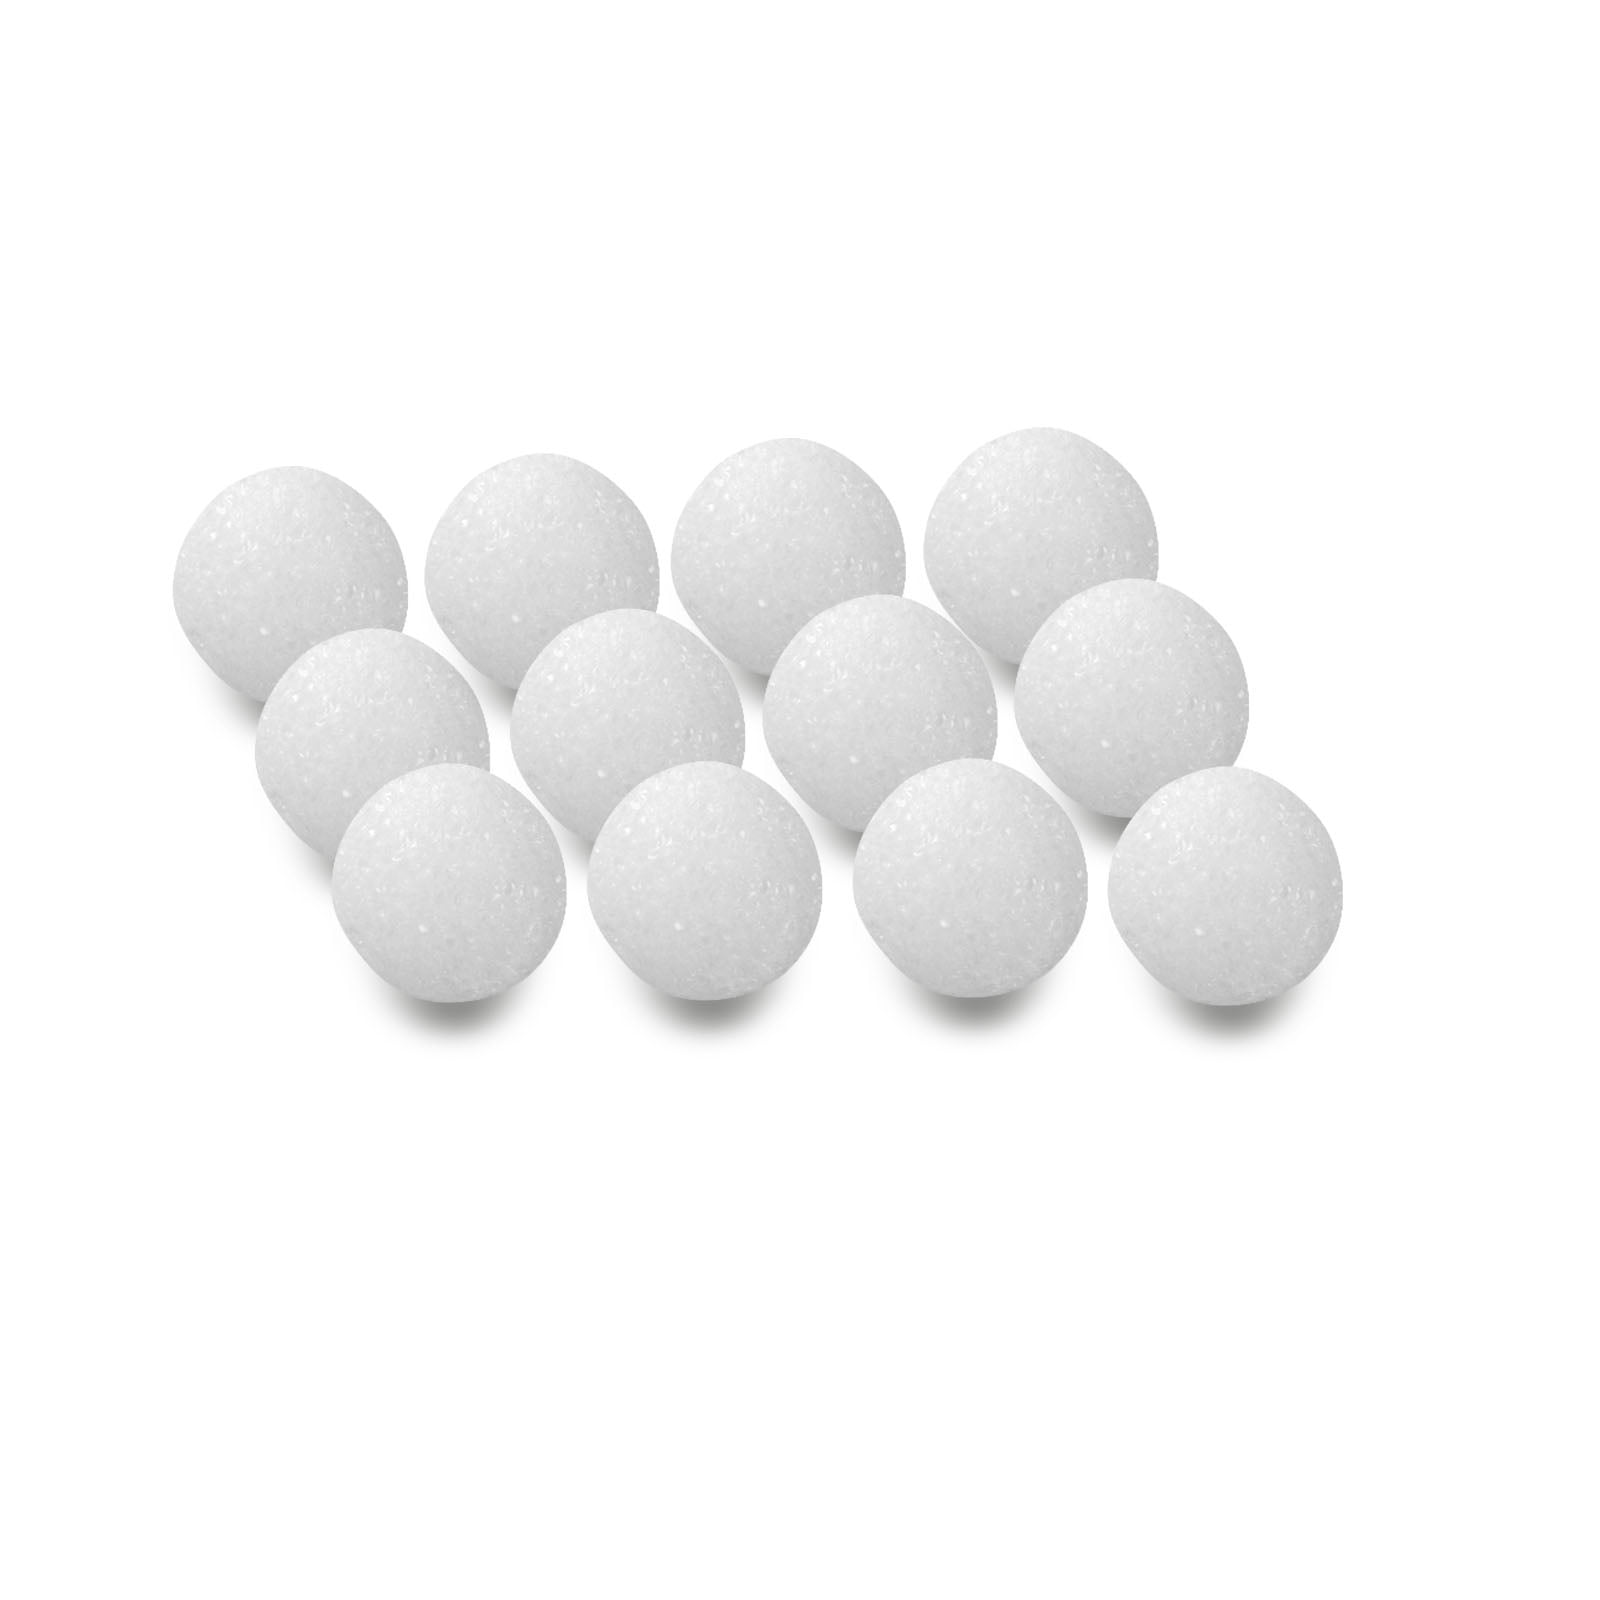 Polystyrene Styrofoam Poly Modelling Balls Spheres Round White Craft Shapes 